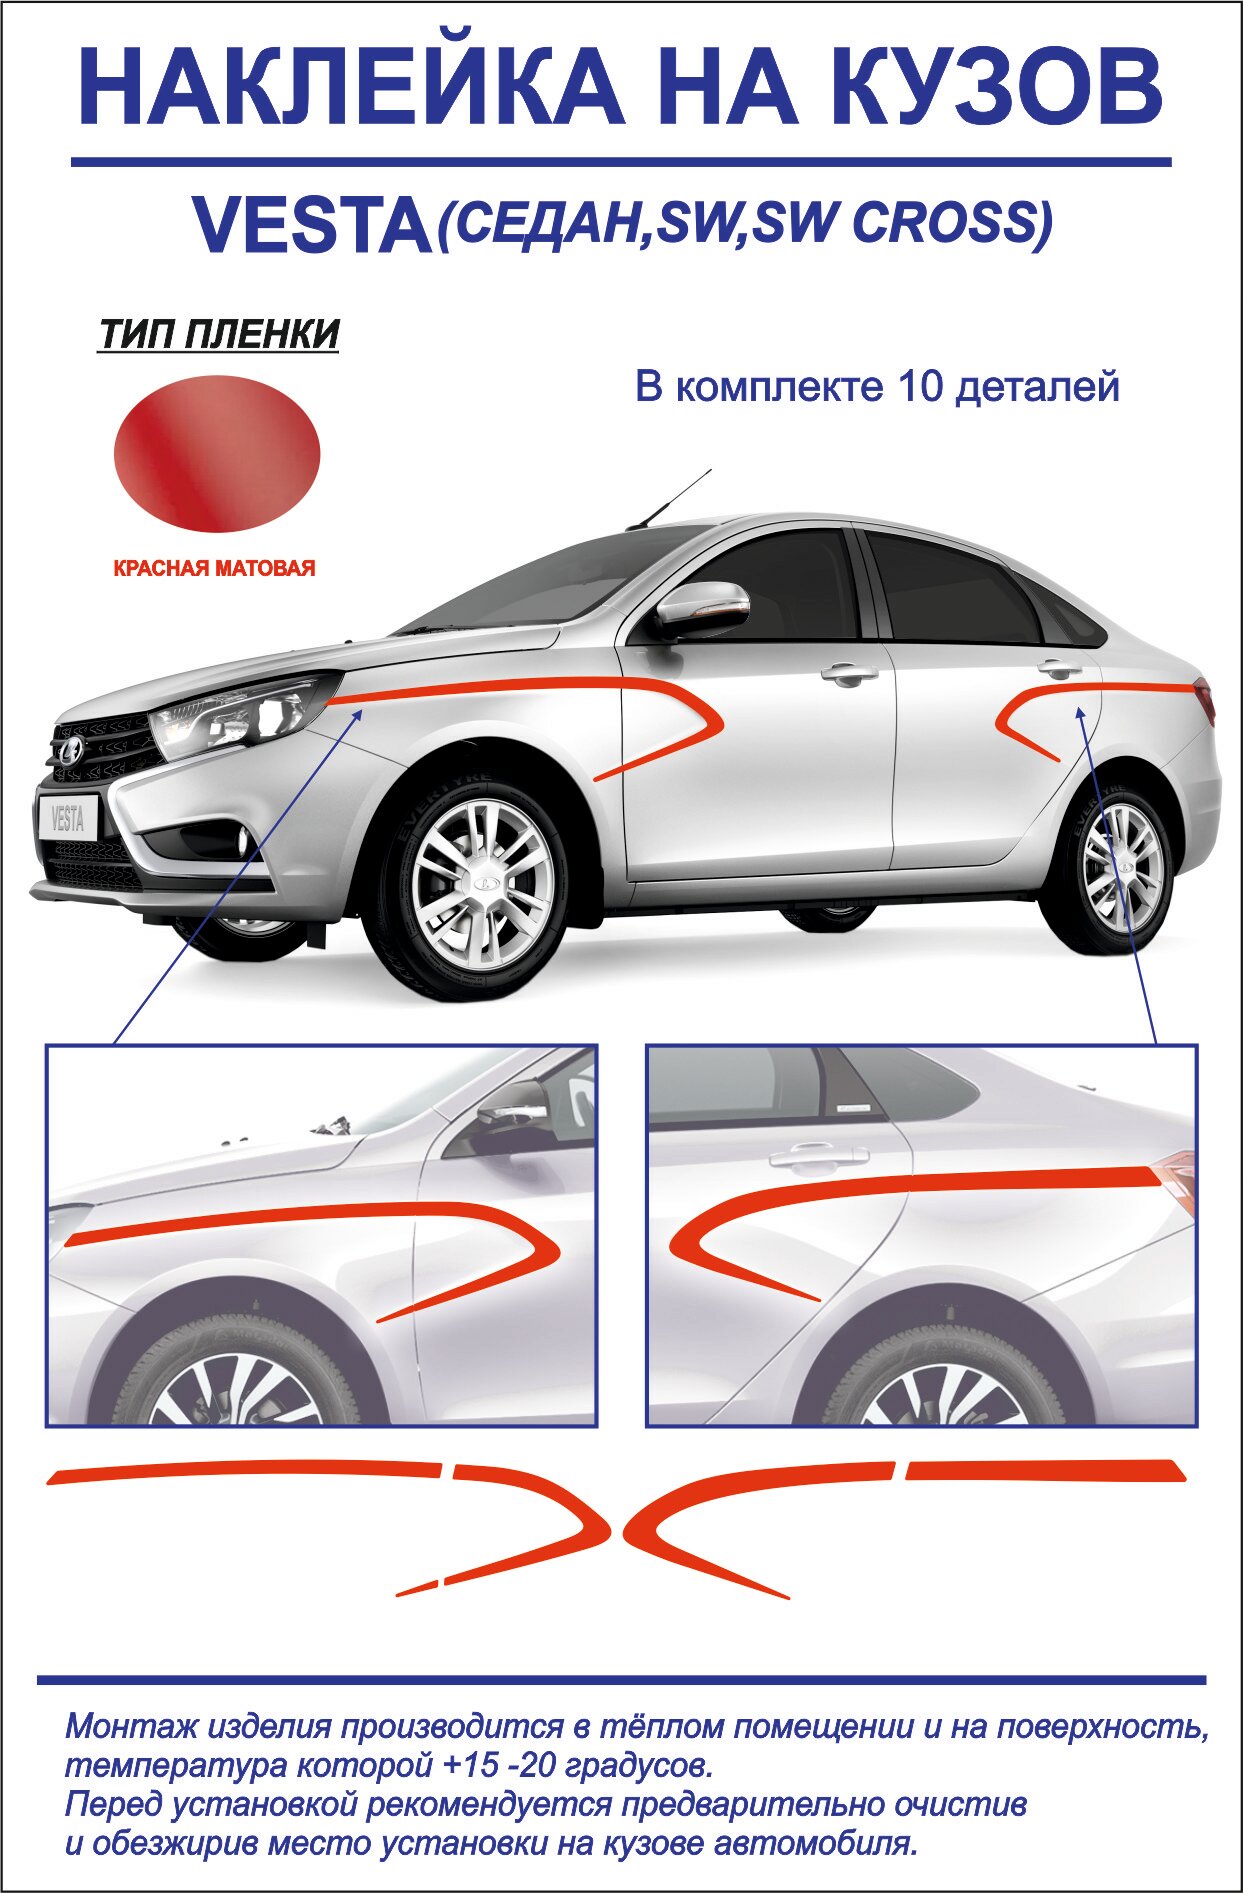 Тюнинг-наклейка на кузов Lada Vesta седан/седан cross, sw, sw cross, sport (красная матовая)10 деталей